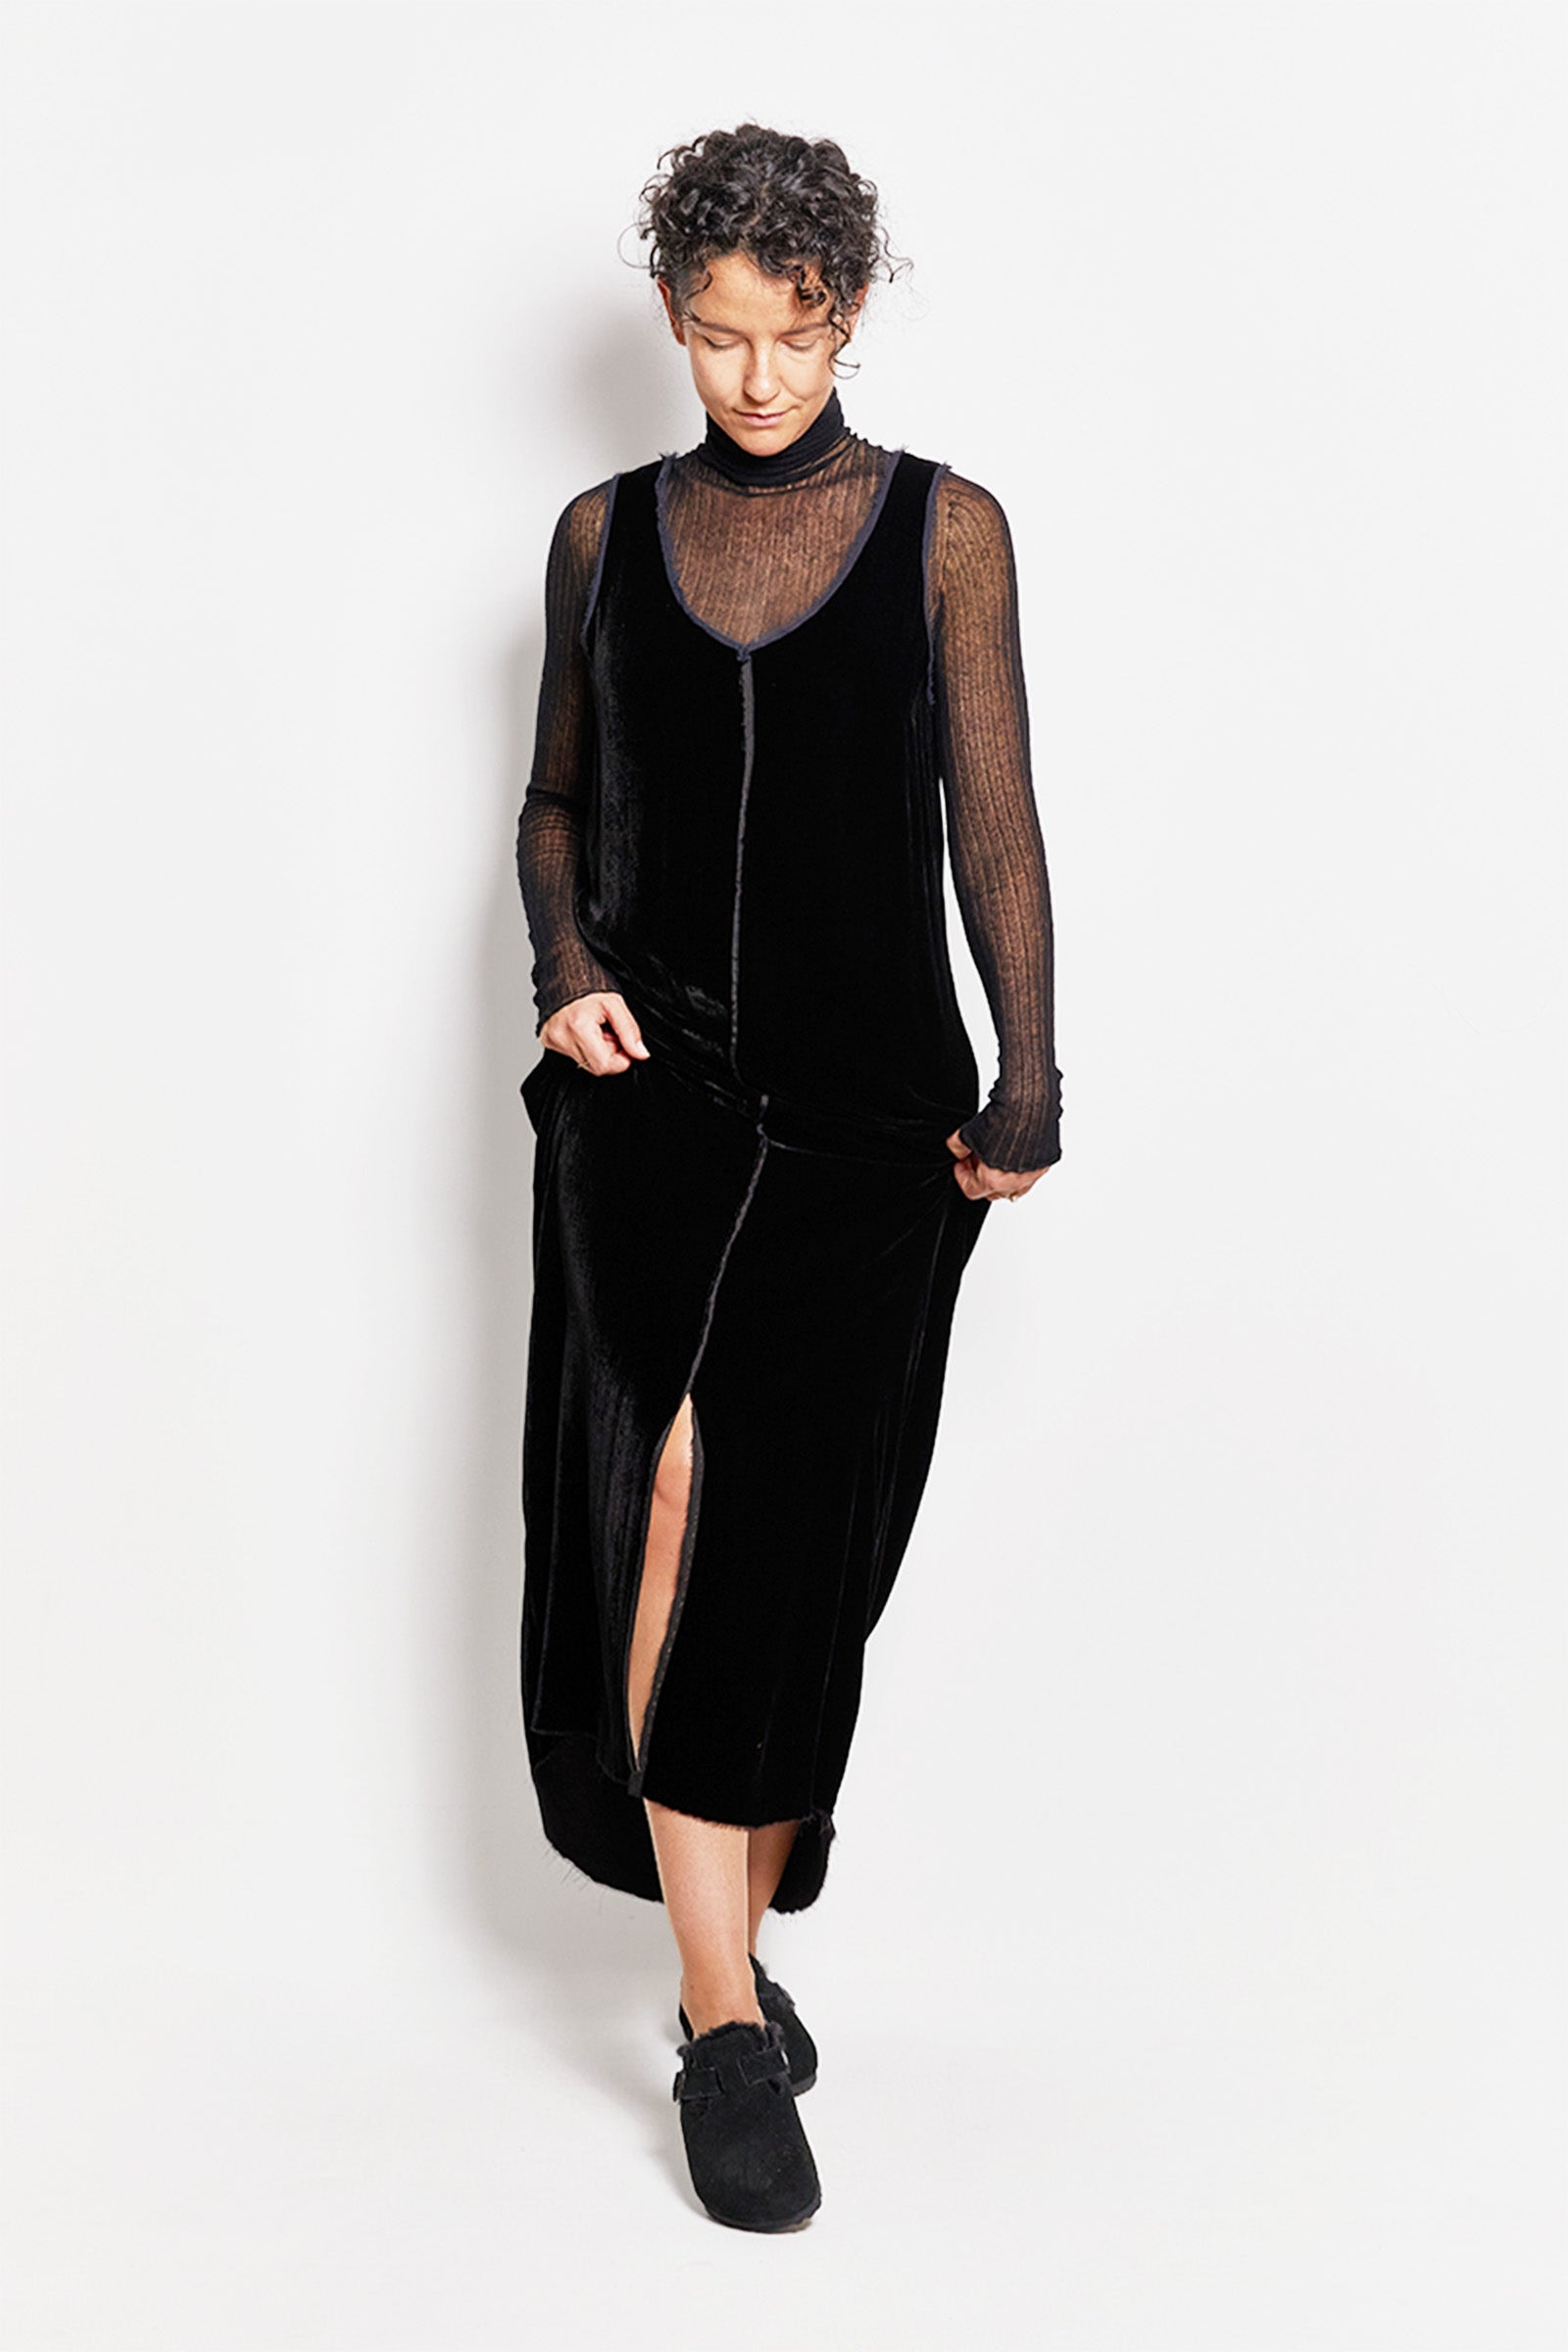 byfreer silk velvet noir dress.